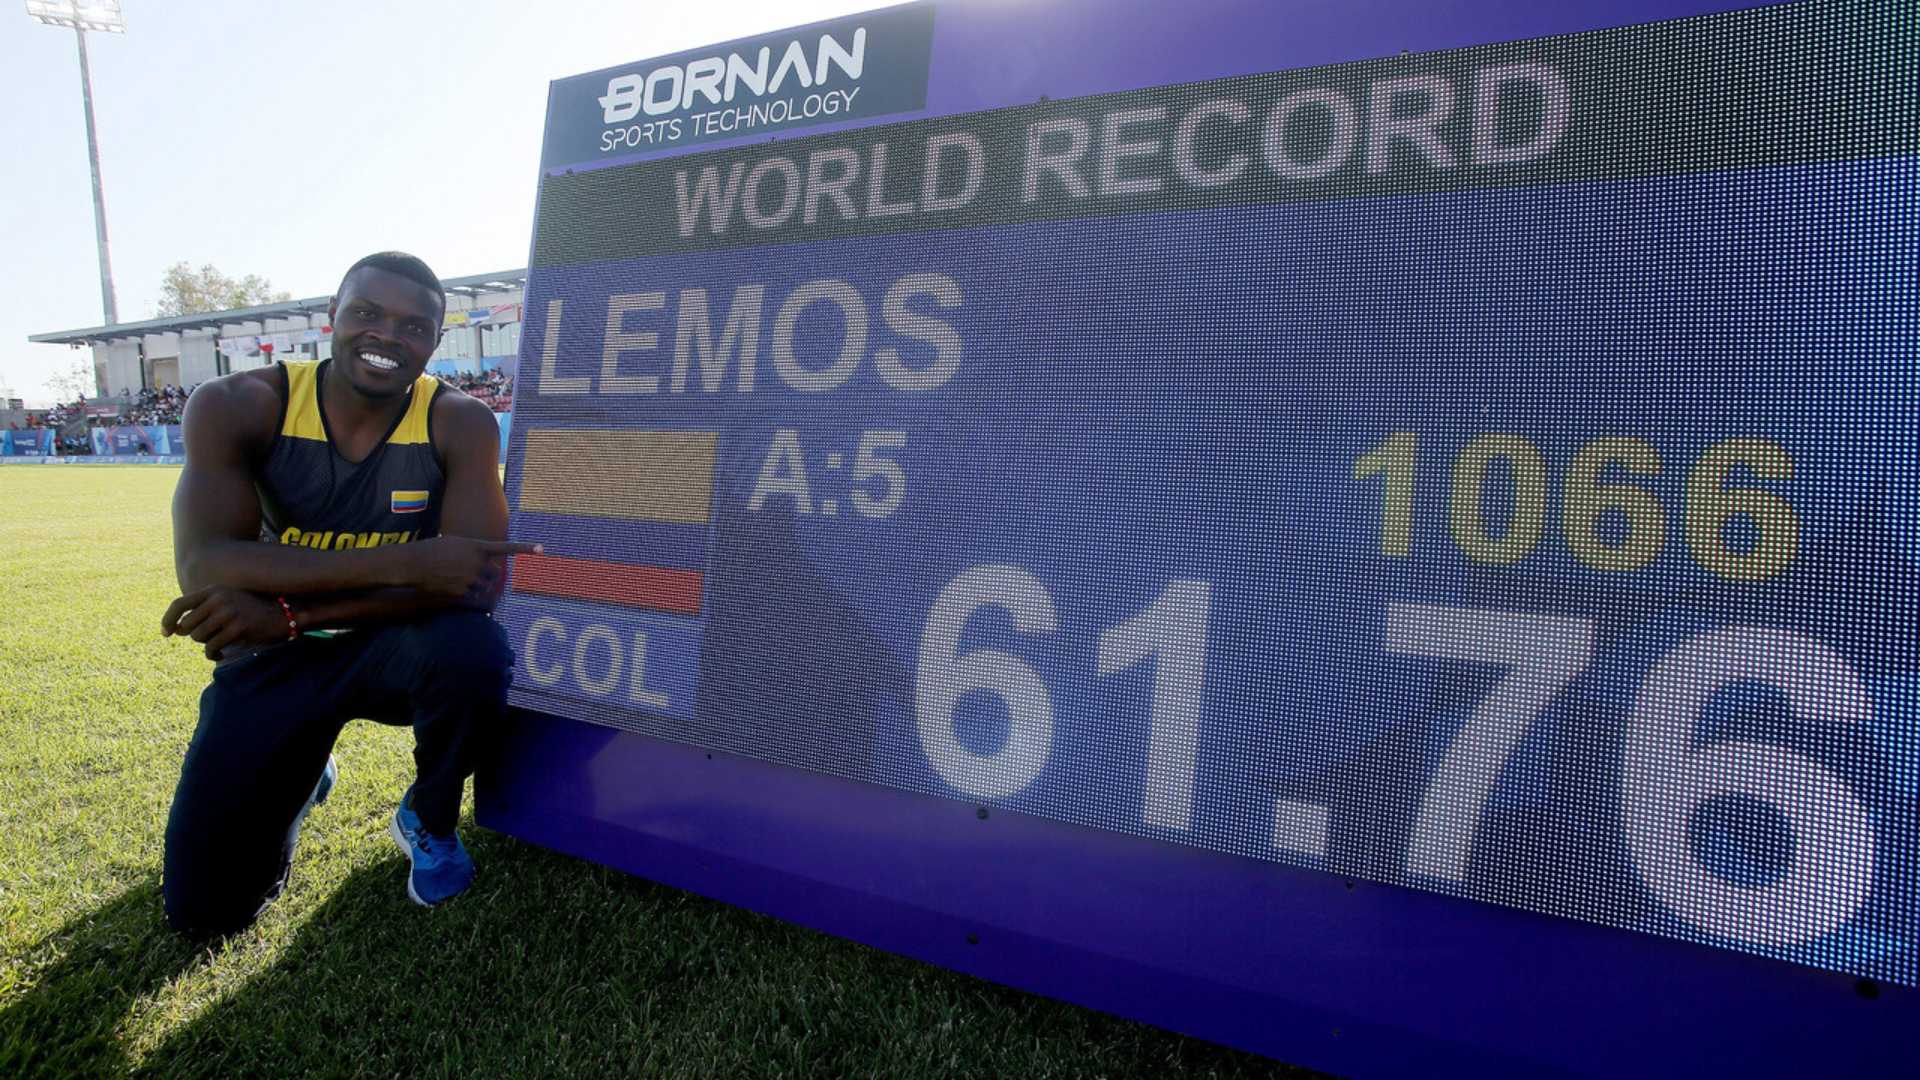 Colombiano Lemos se supera a sí mismo y establece nuevo récord mundial